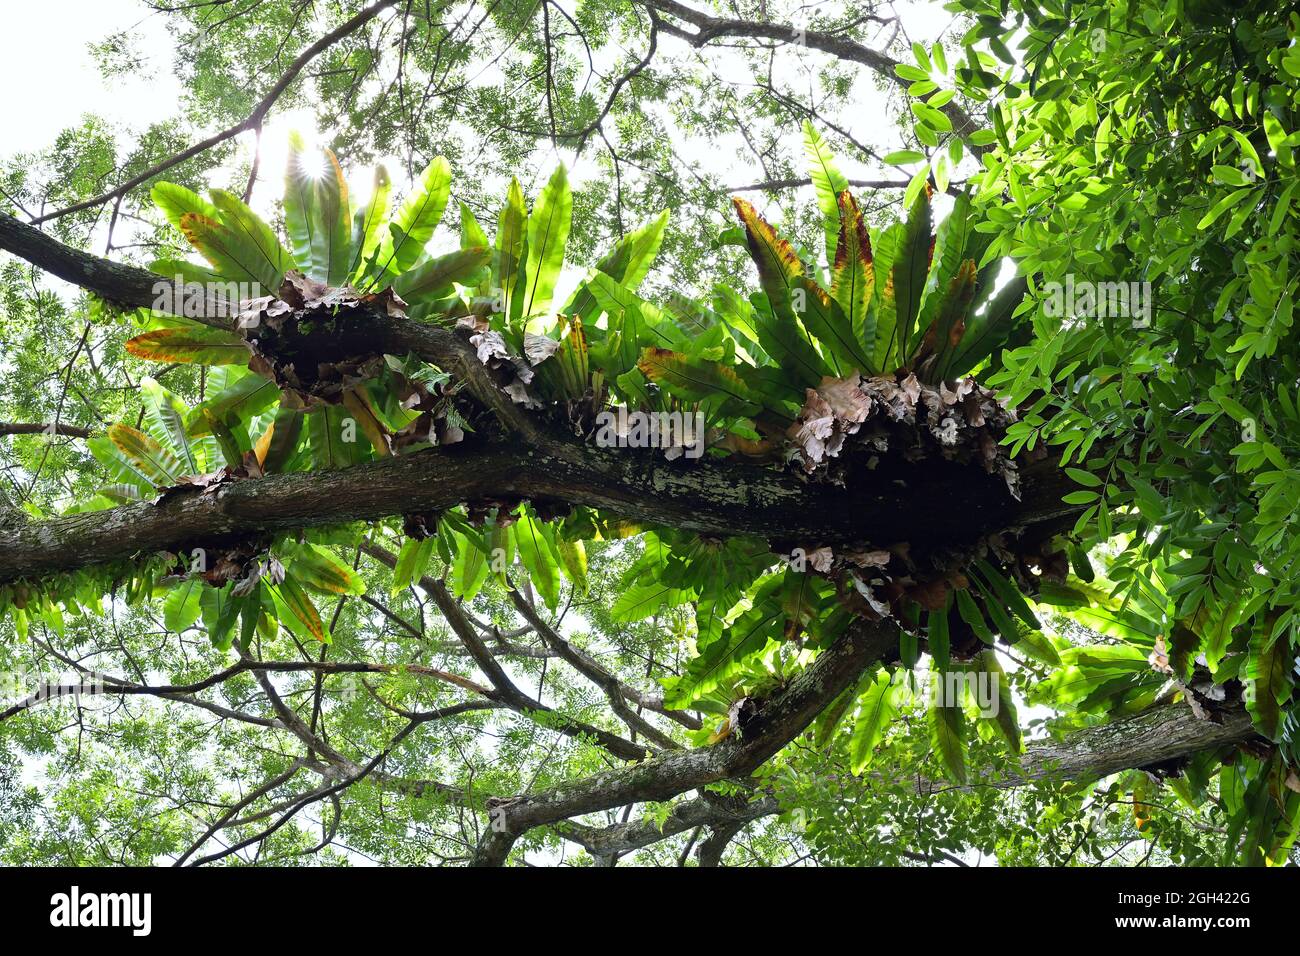 Vue de plusieurs grappes de la Fern du Nid d'oiseau qui poussent sur une grande branche d'arbres dans la forêt tropicale, depuis le dessous Banque D'Images